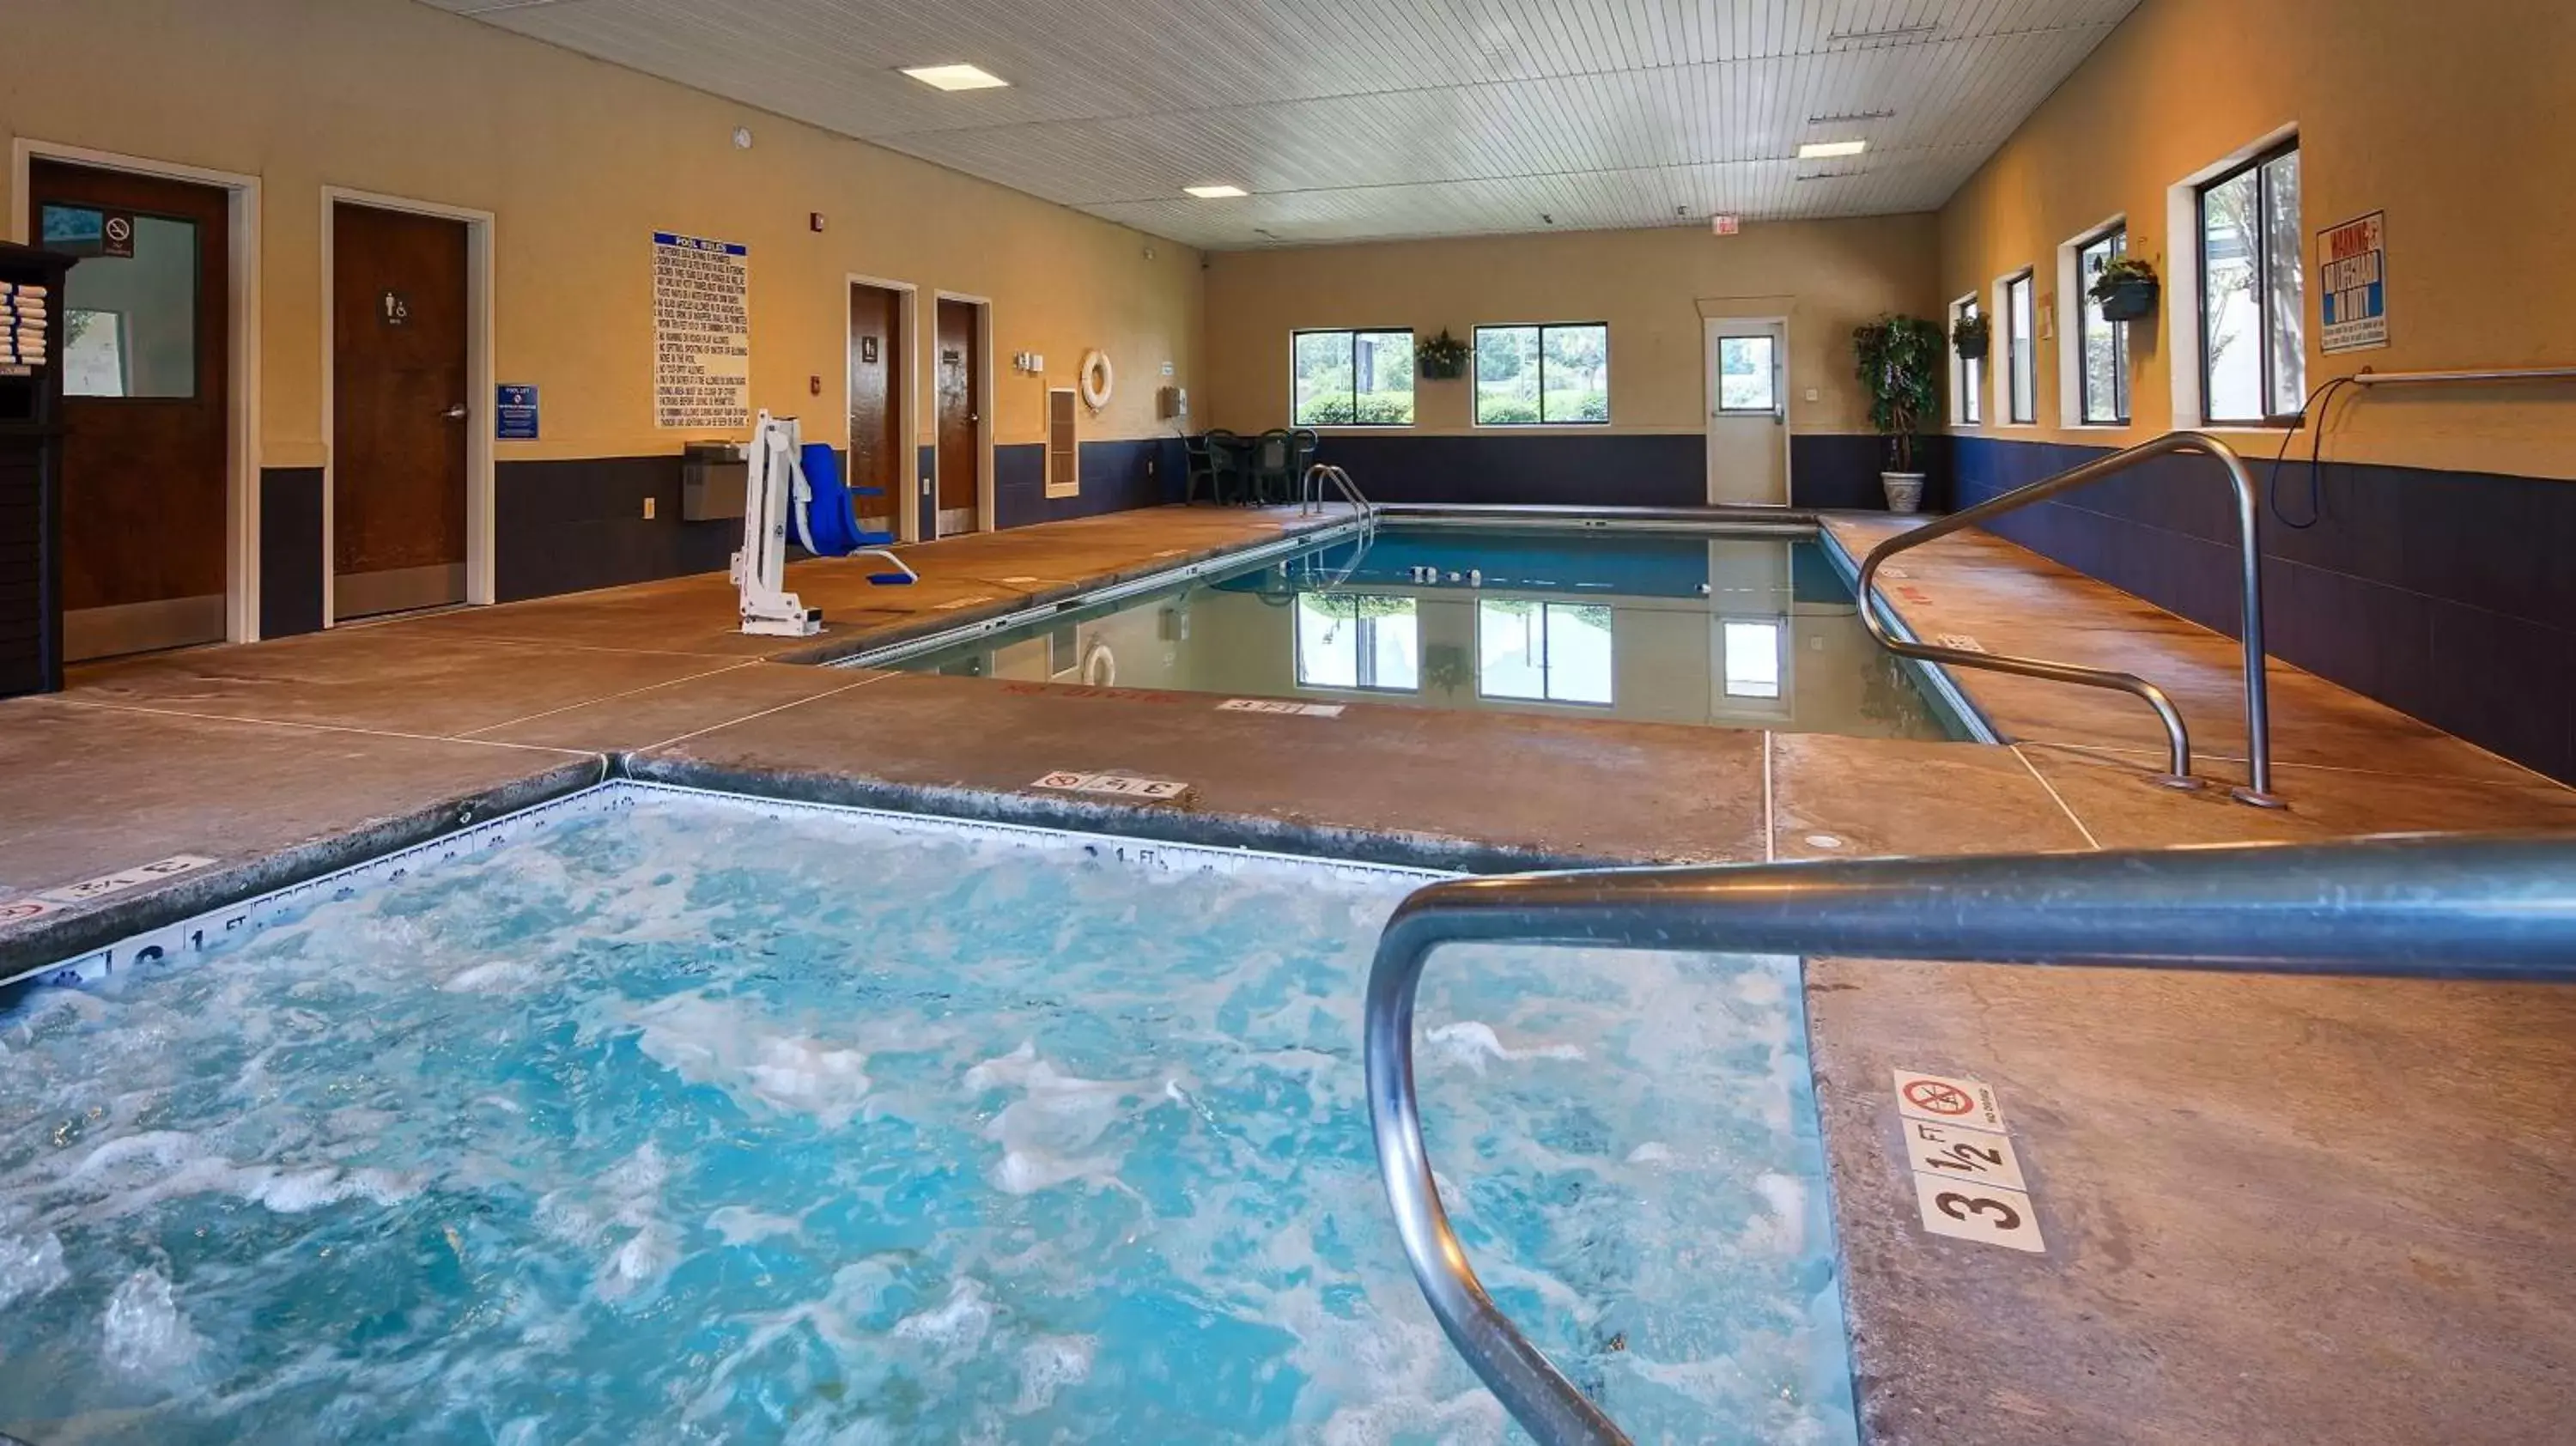 On site, Swimming Pool in Best Western Inn & Suites of Macon